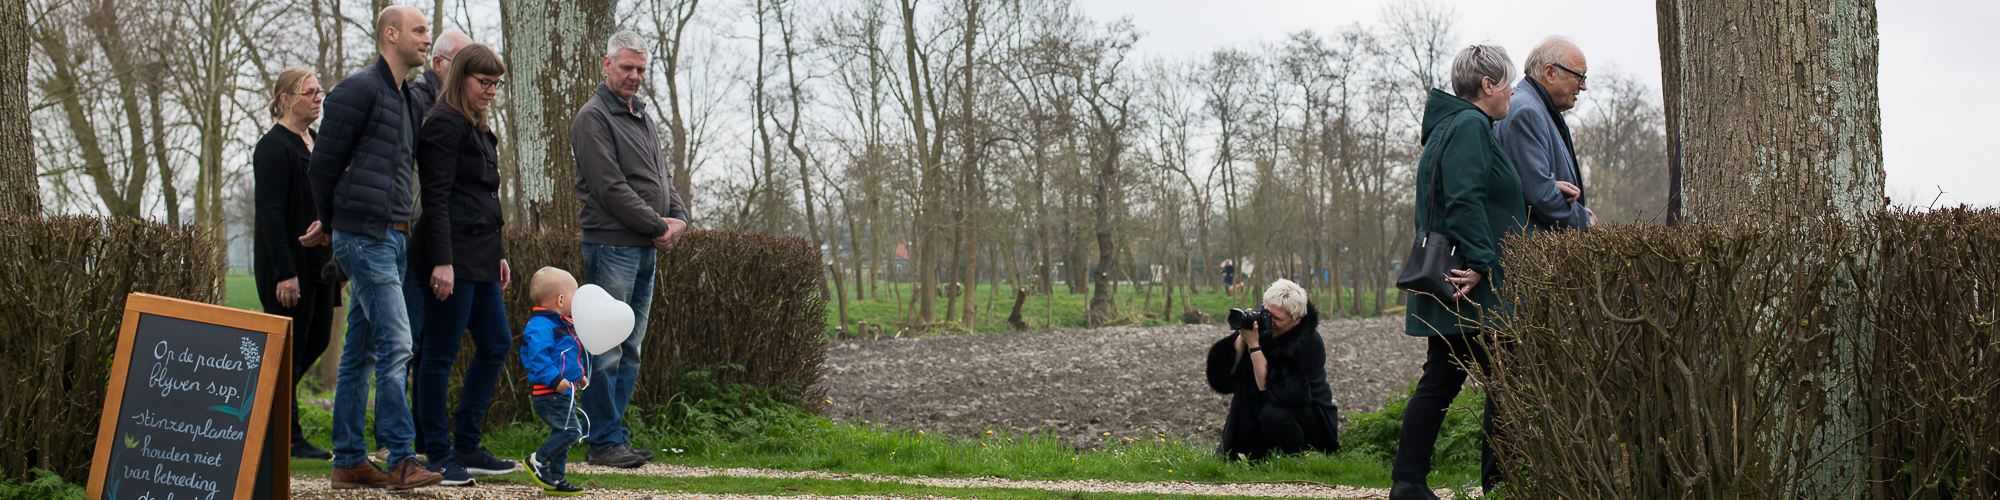 Ilja-Verstraten-afscheidsfotograaf-uitvaartfotograaf-Zeeland-maakt-foto's-tijdens-begrafenis